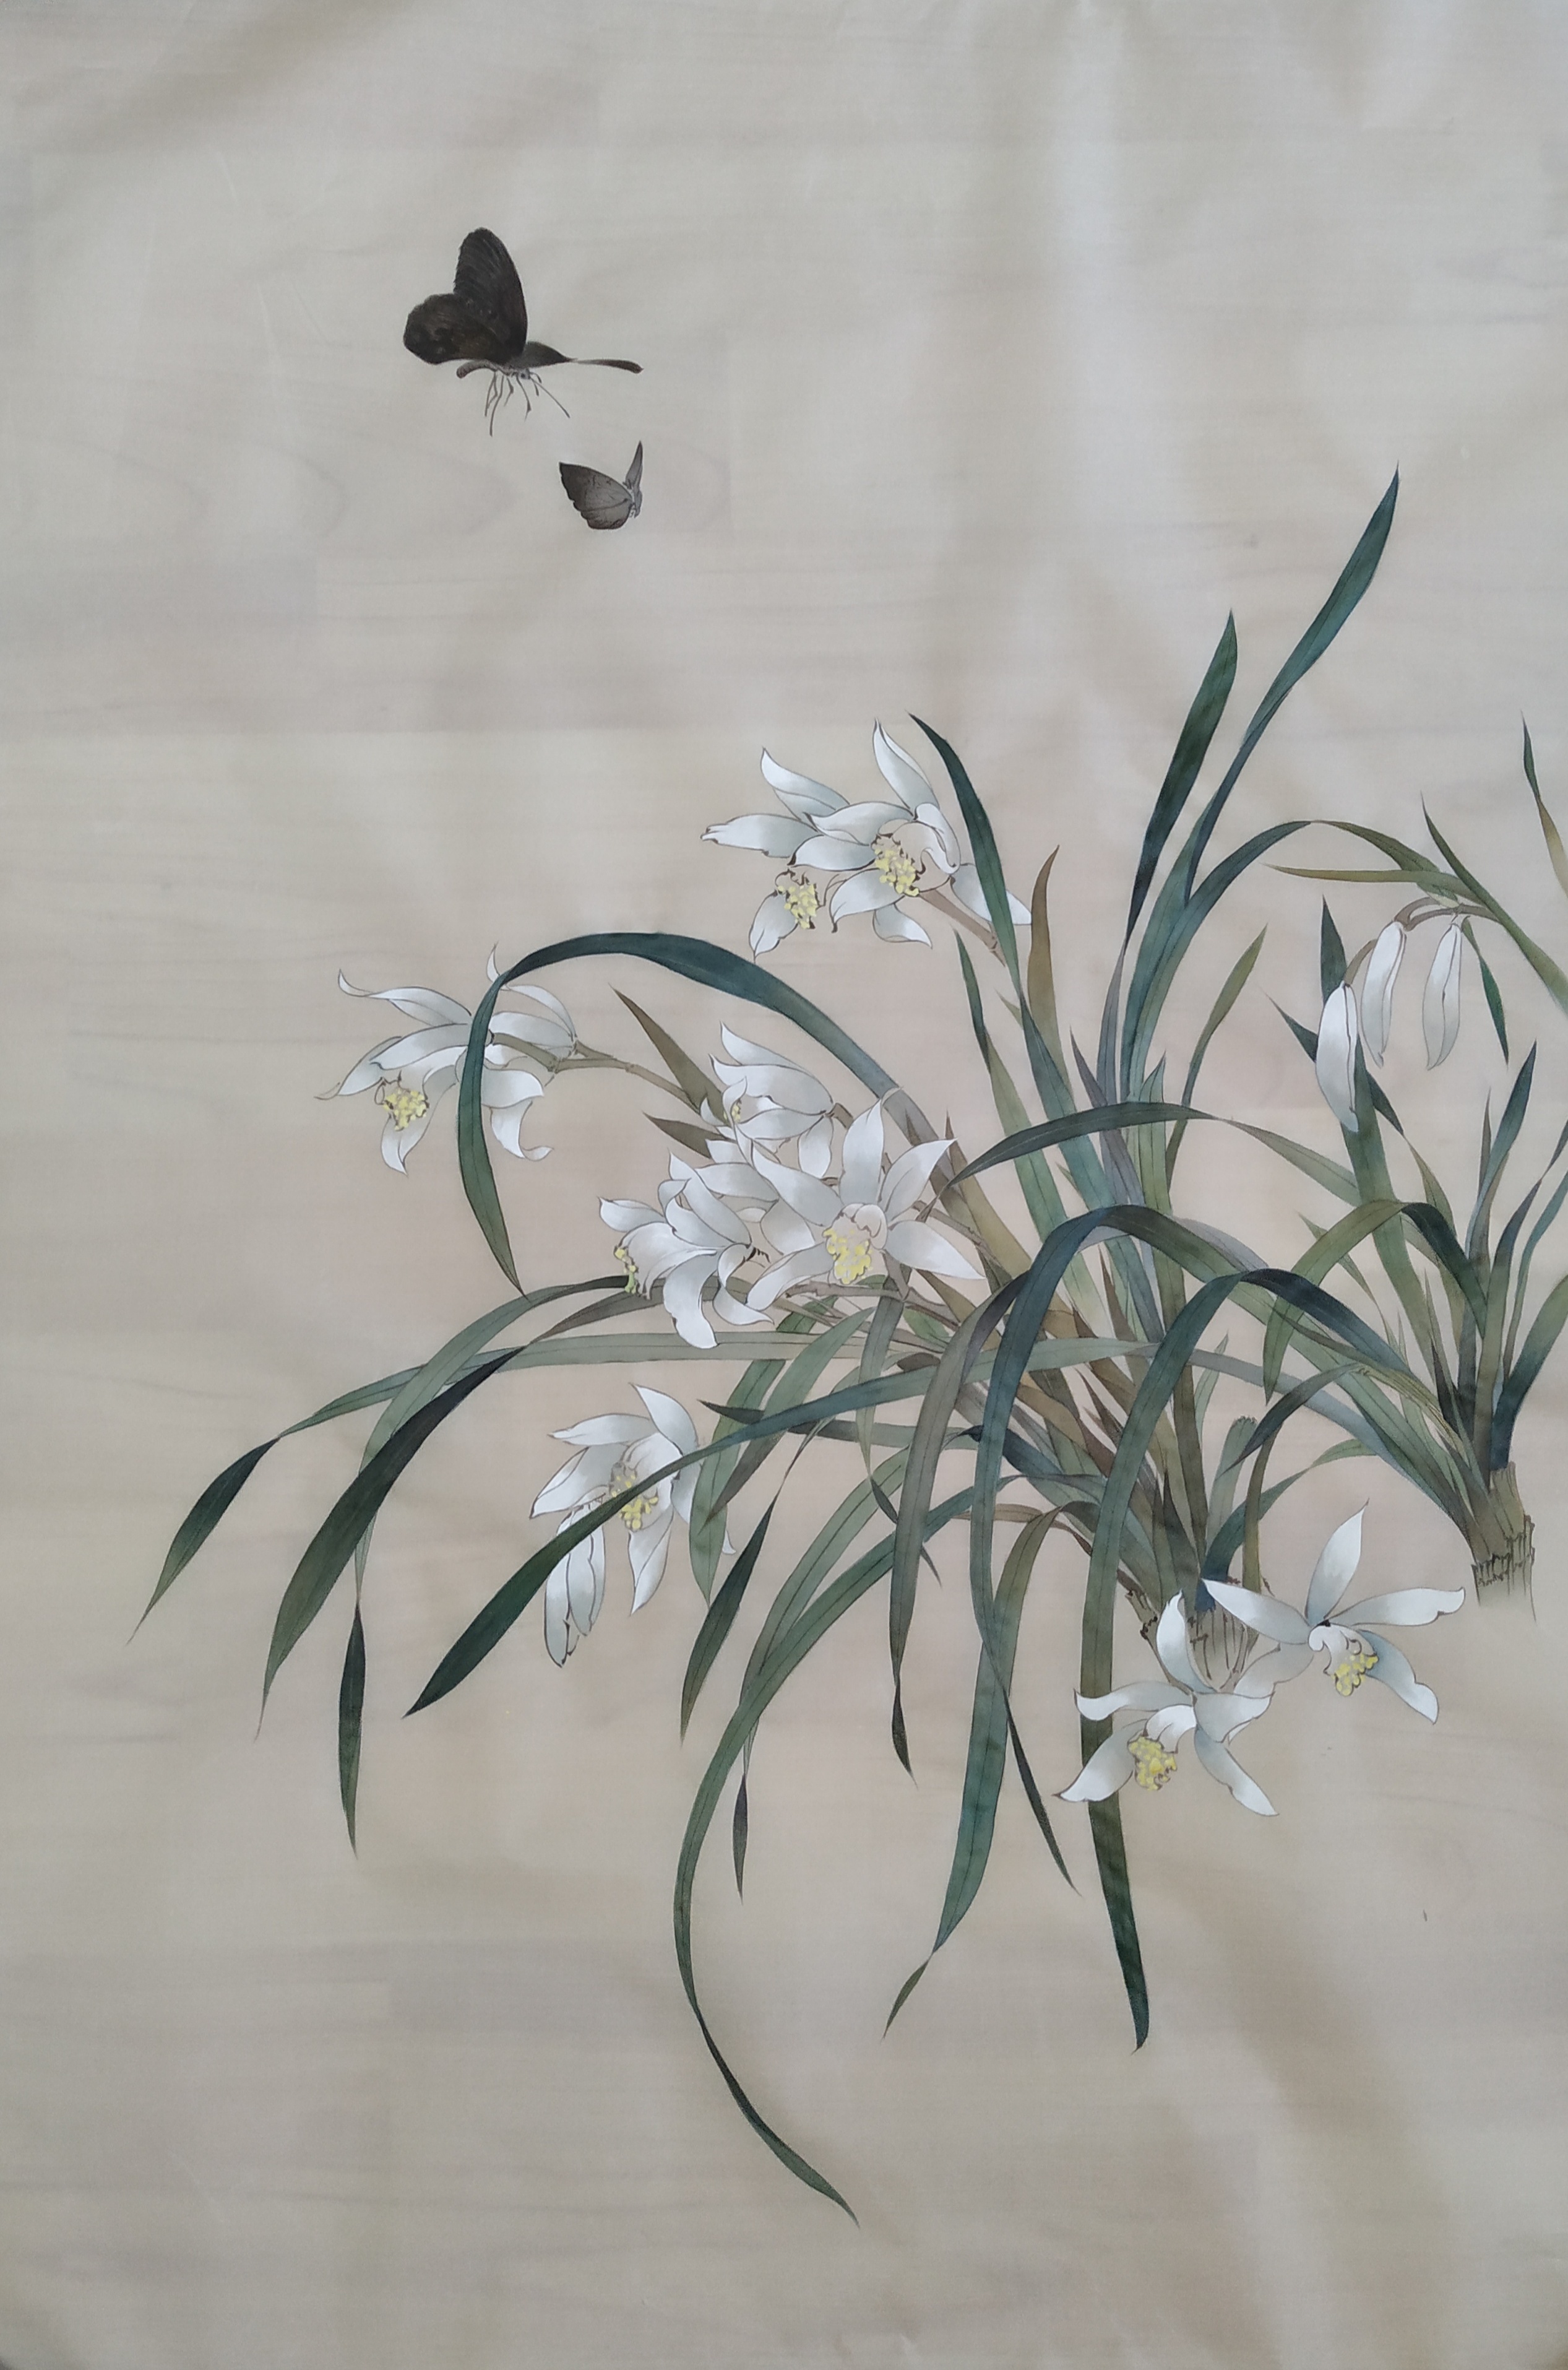 《向日葵》-梵高最著名的画作《向日葵》作品赏析【高清图片】-露西学画画